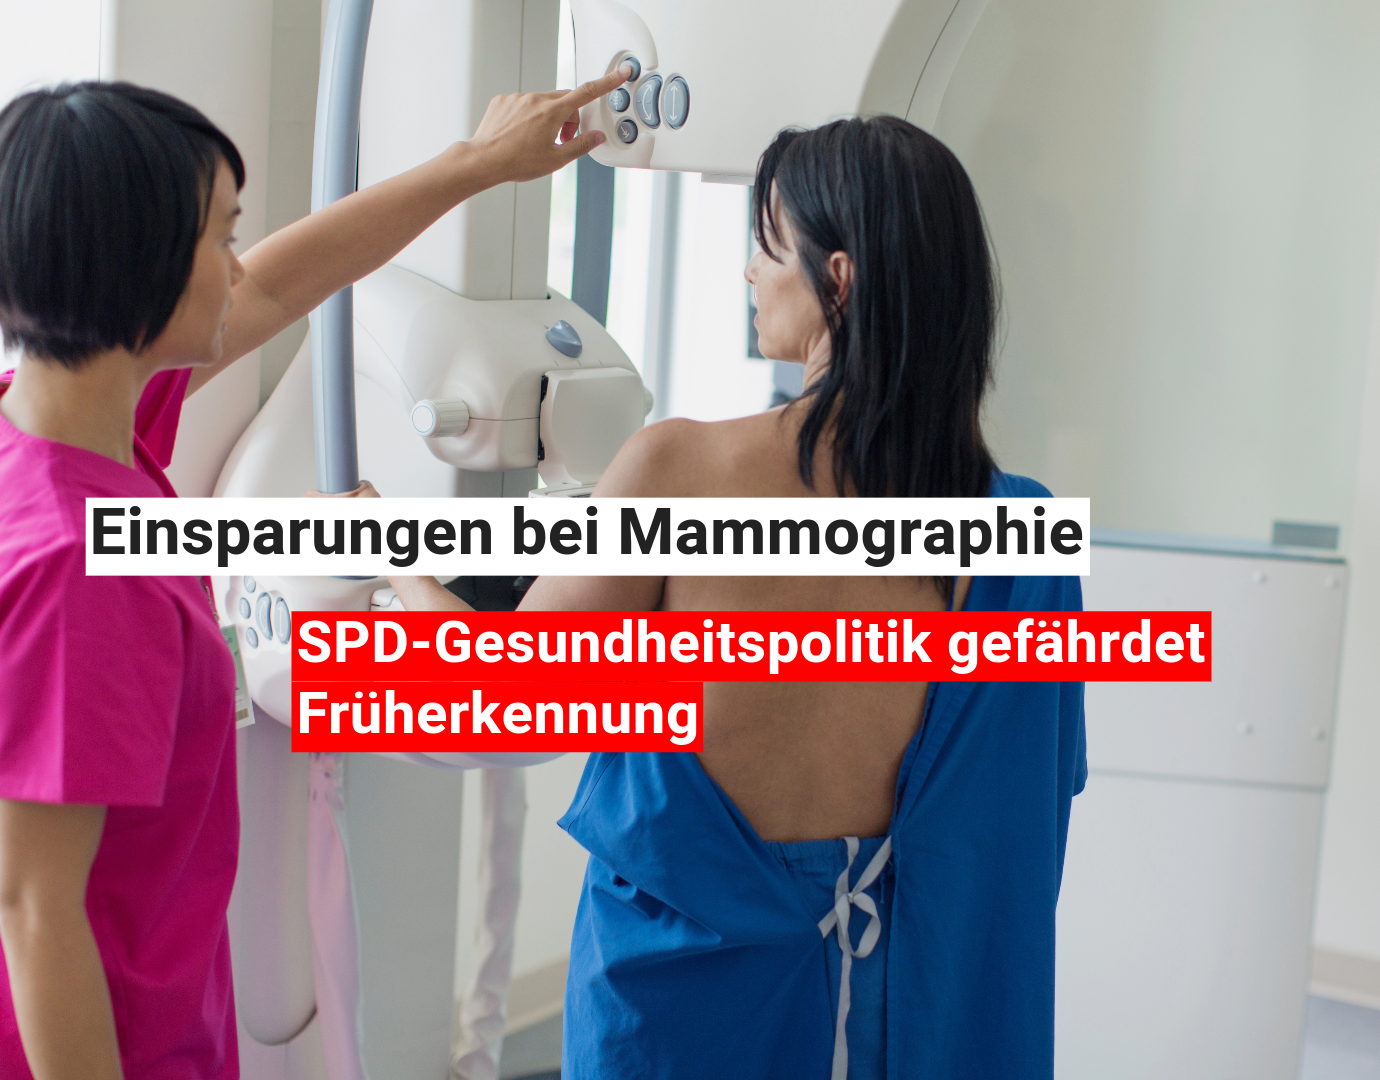 Ende des Mammographie-Angebots in Neumarkt